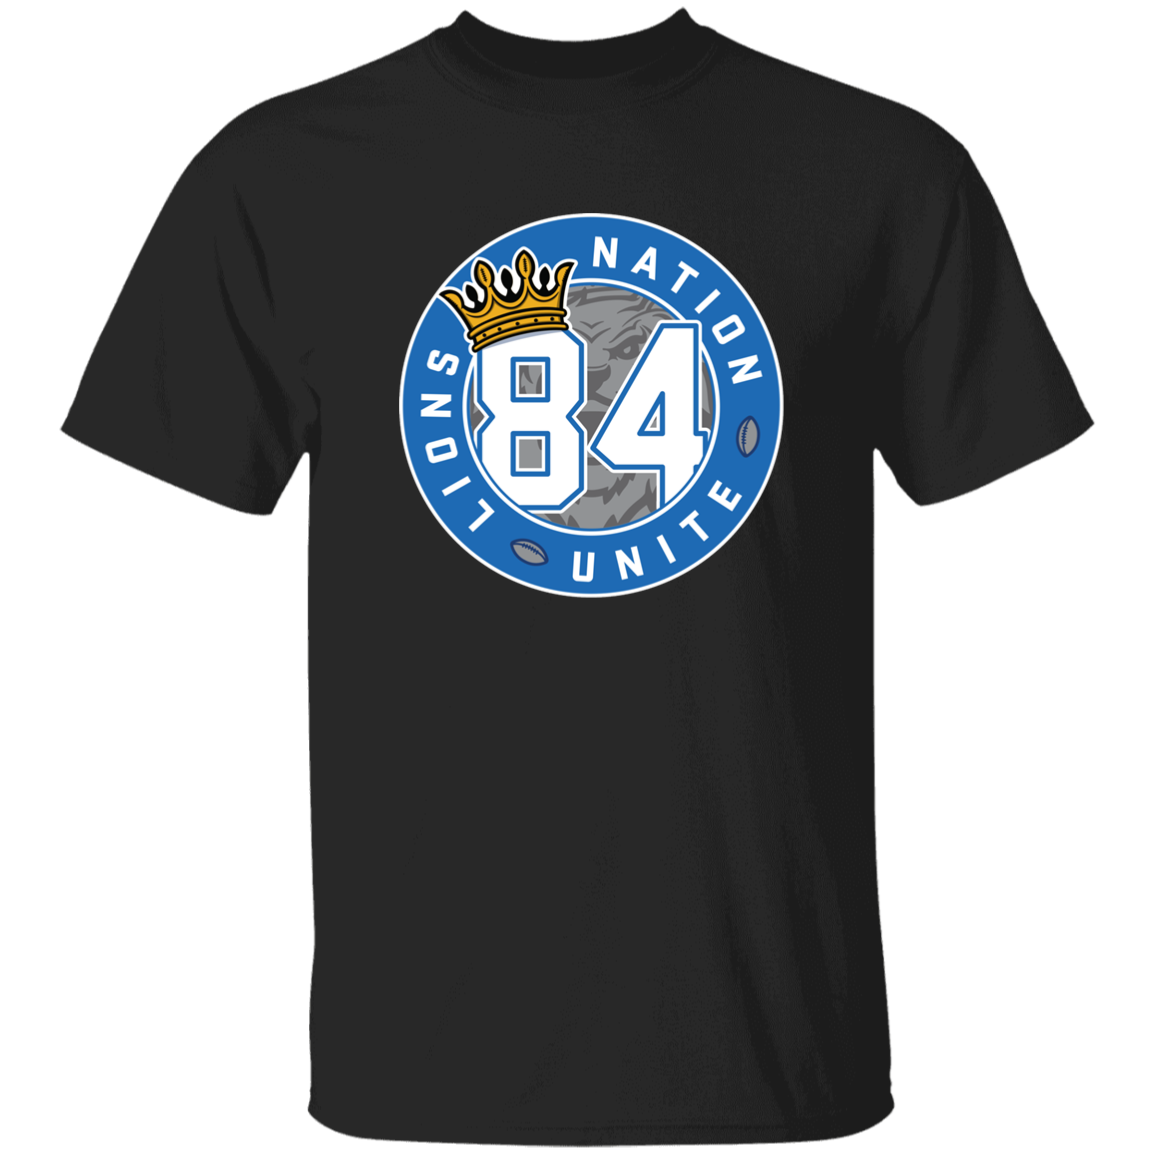 No. 84 Lions Nation Unite® T-Shirt